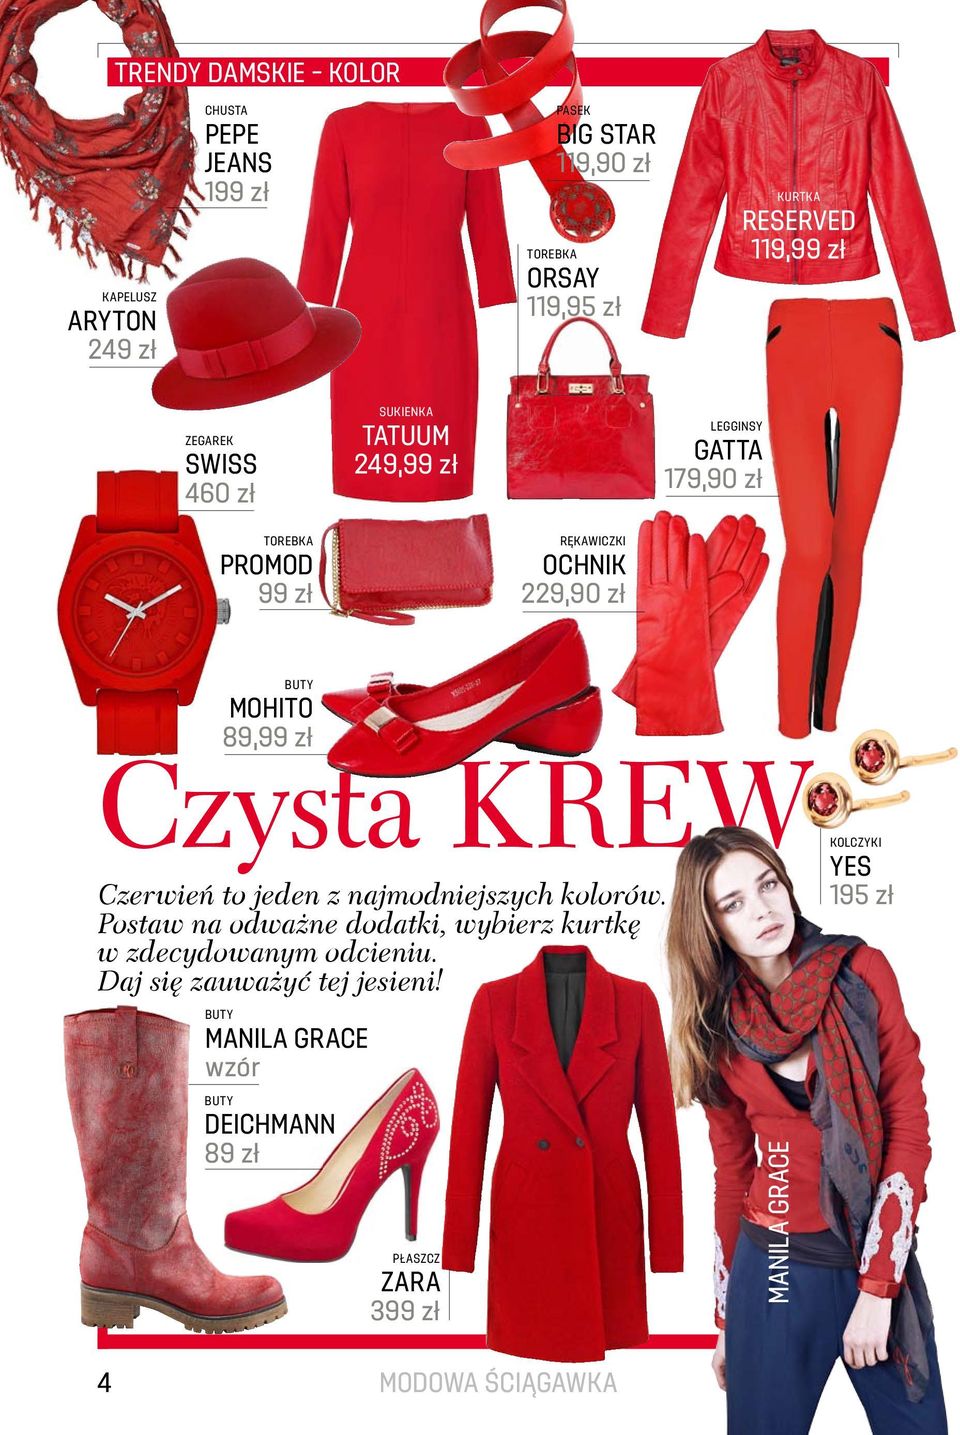 MOHITO 89,99 zł Czysta KREW Czerwień to jeden z najmodniejszych kolorów. Postaw na odważne dodatki, wybierz kurtkę w zdecydowanym odcieniu.